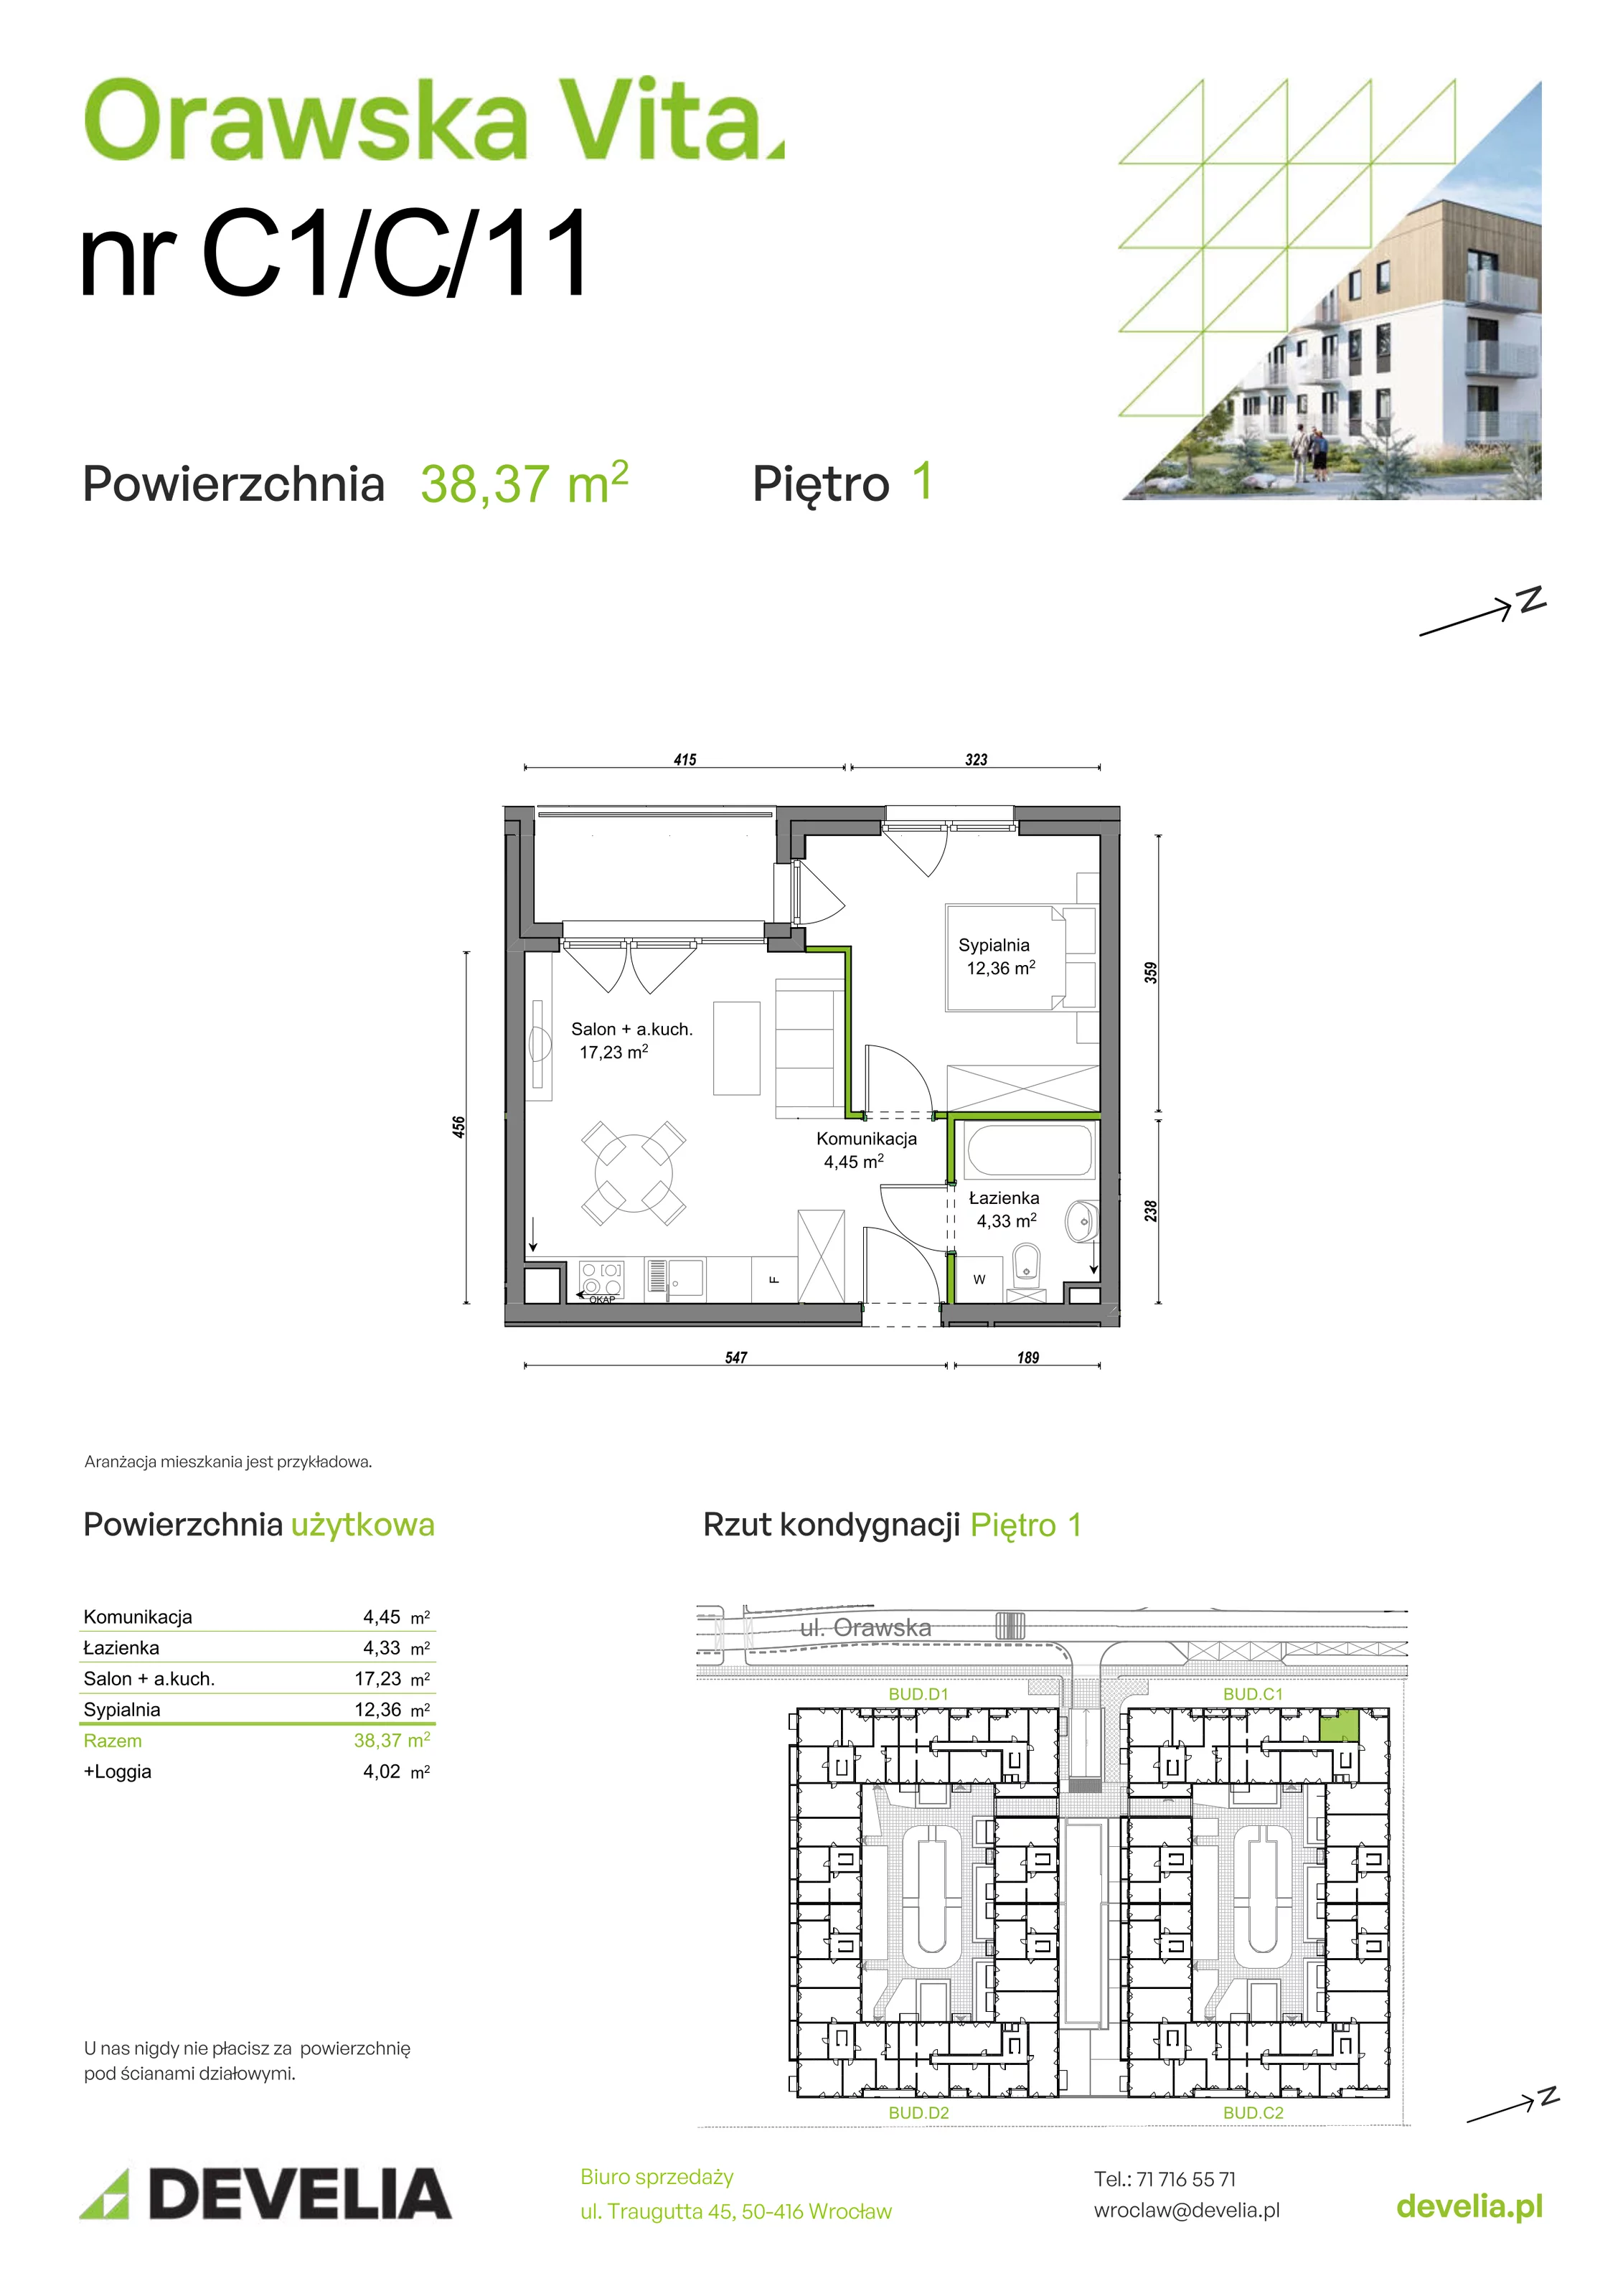 Mieszkanie 38,37 m², piętro 1, oferta nr C1/C/11, Orawska Vita, Wrocław, Ołtaszyn, Krzyki, ul. Orawska 73